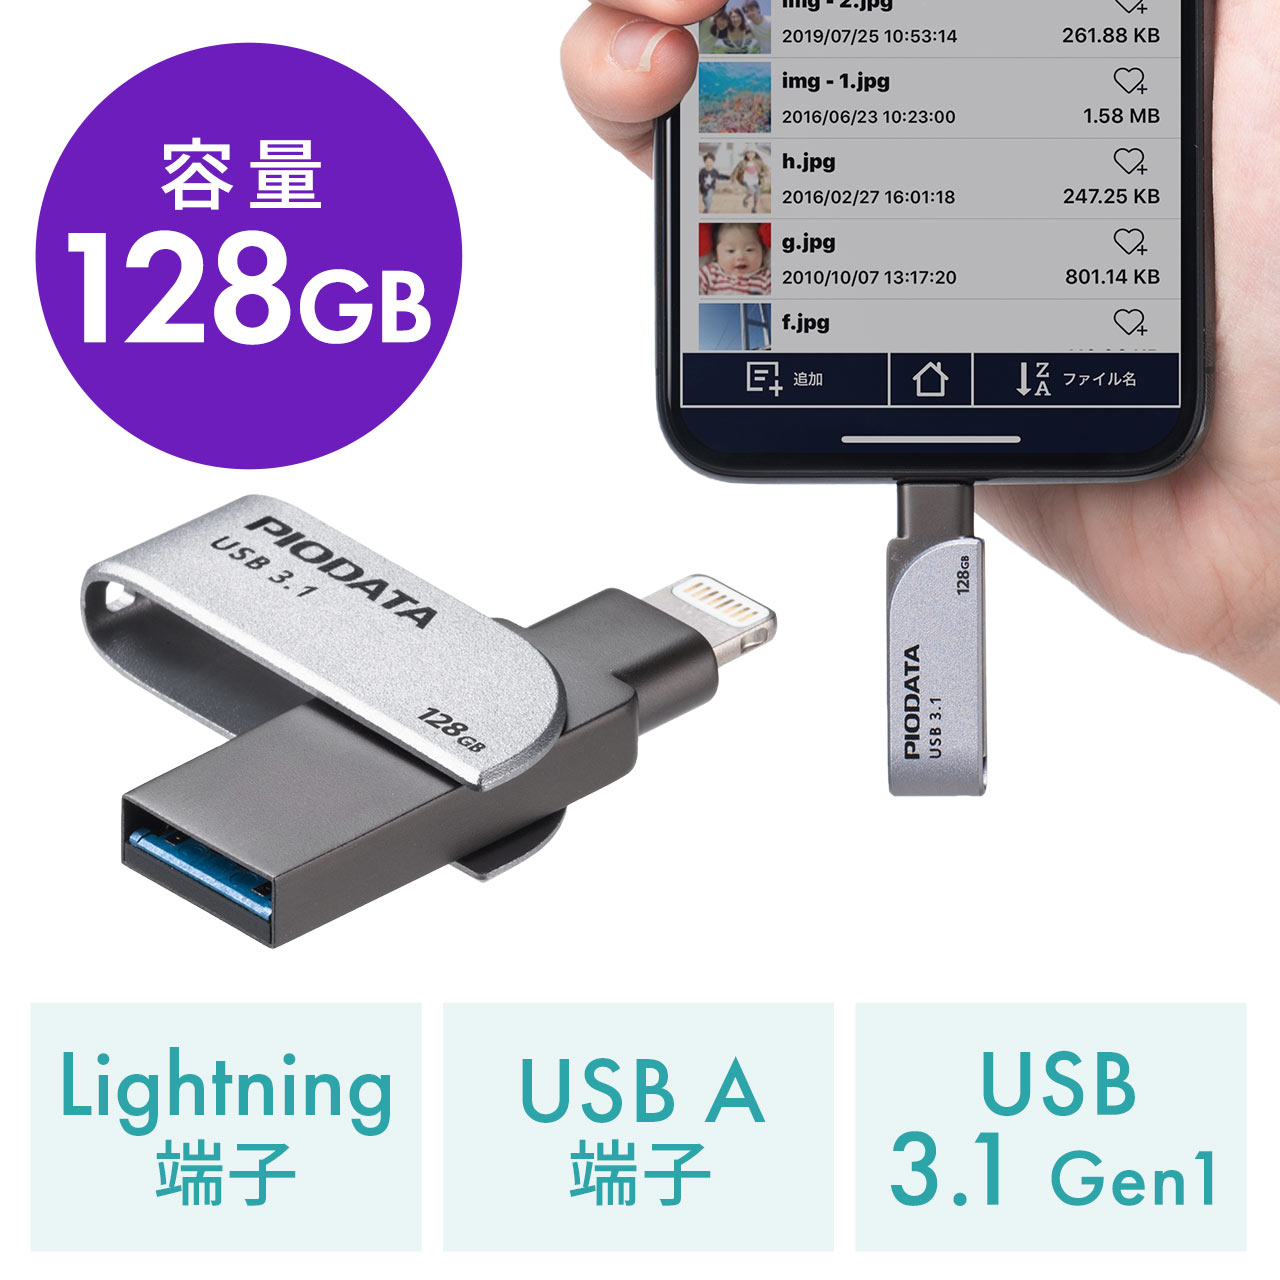 USBメモリ 外付けメモリ iPhone対応 128GB データ保存